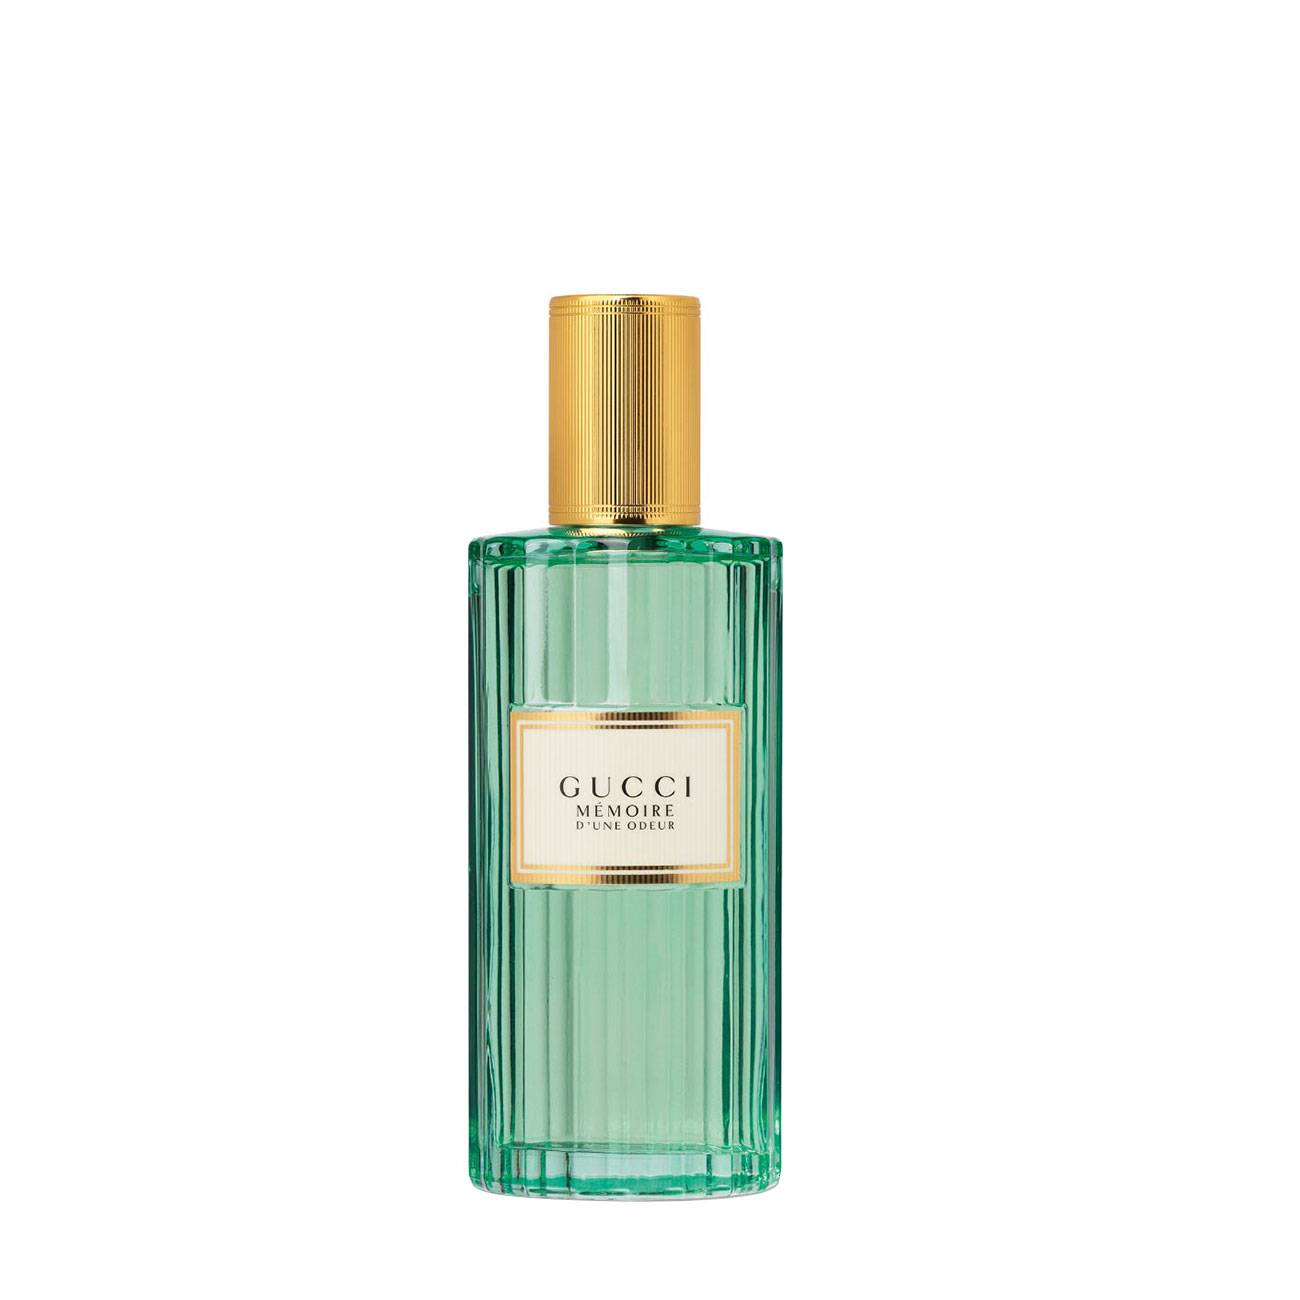 Apa de Parfum Gucci MEMOIRE D’UNE ODEUR 60ml cu comanda online